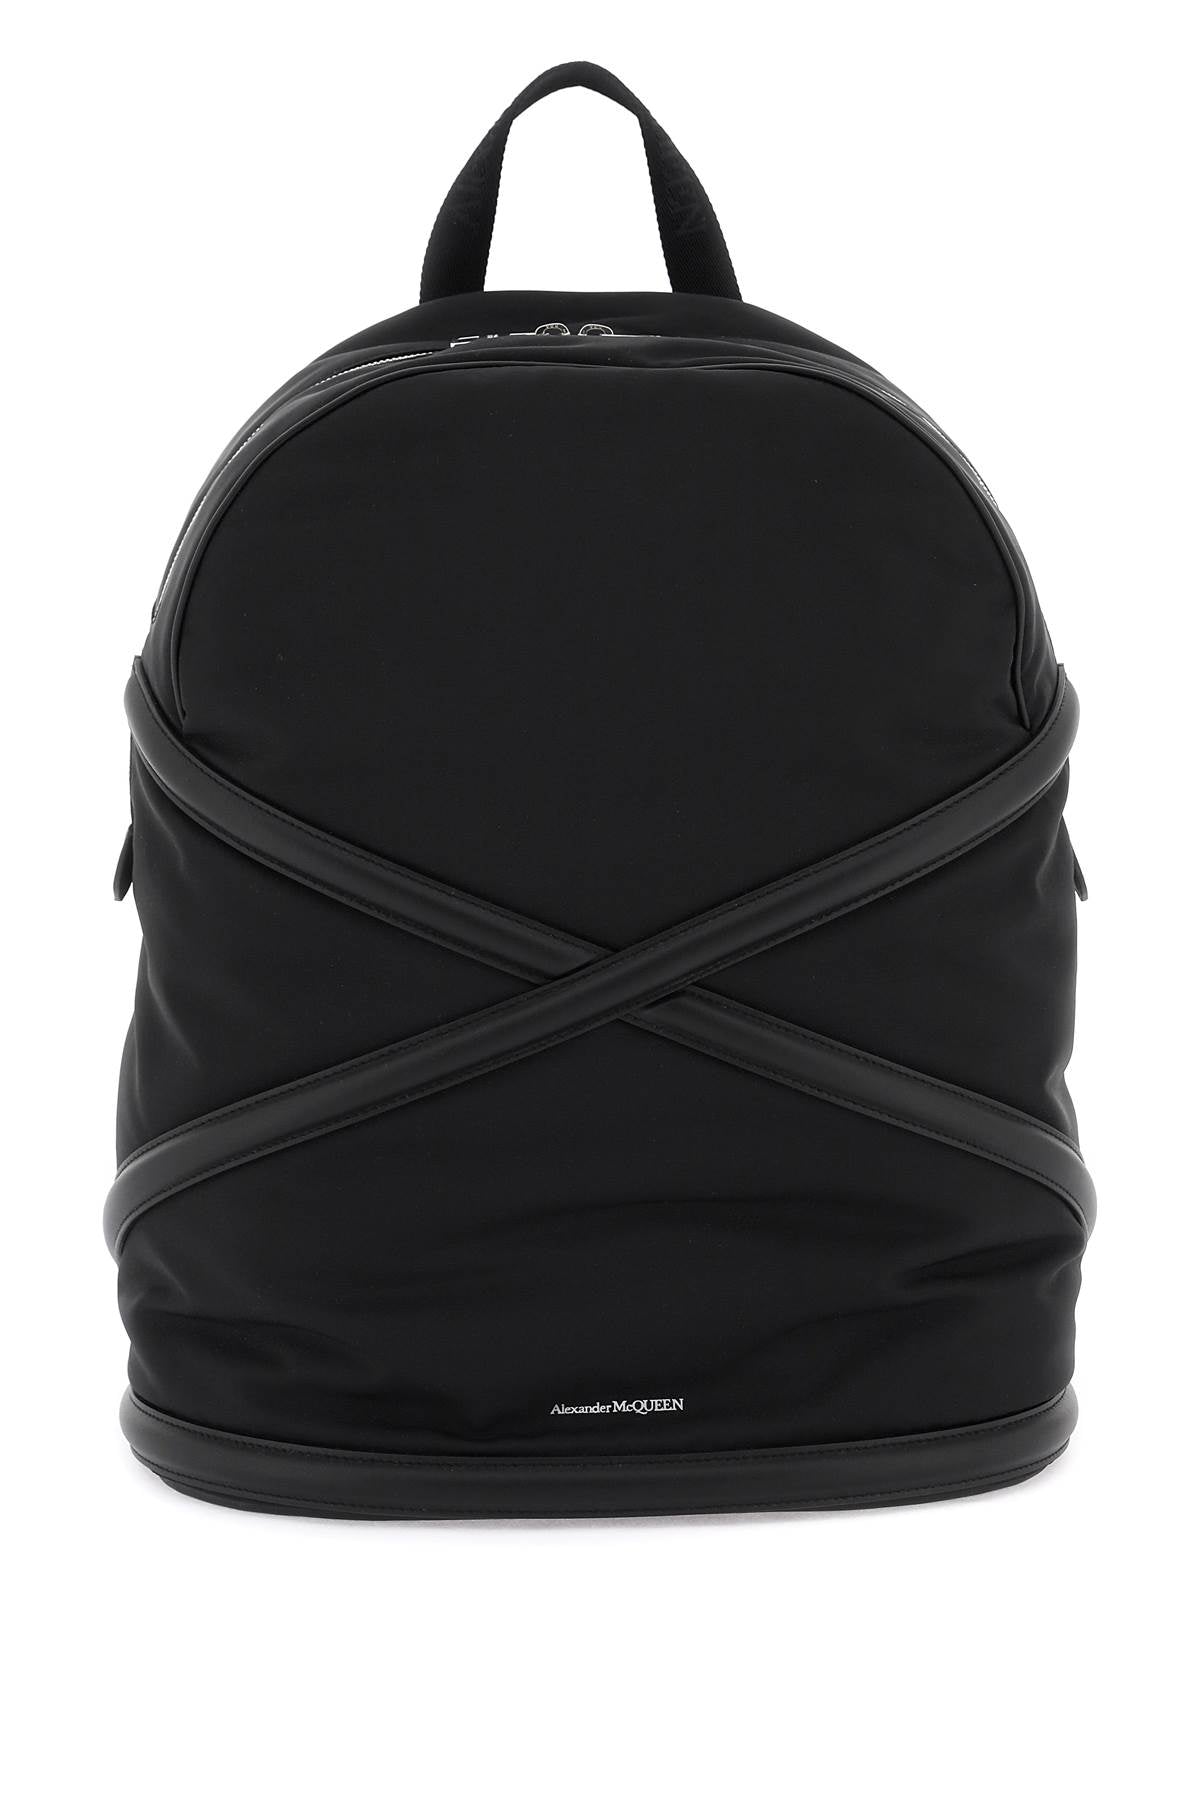 Alexander mcqueen harness backpack-0